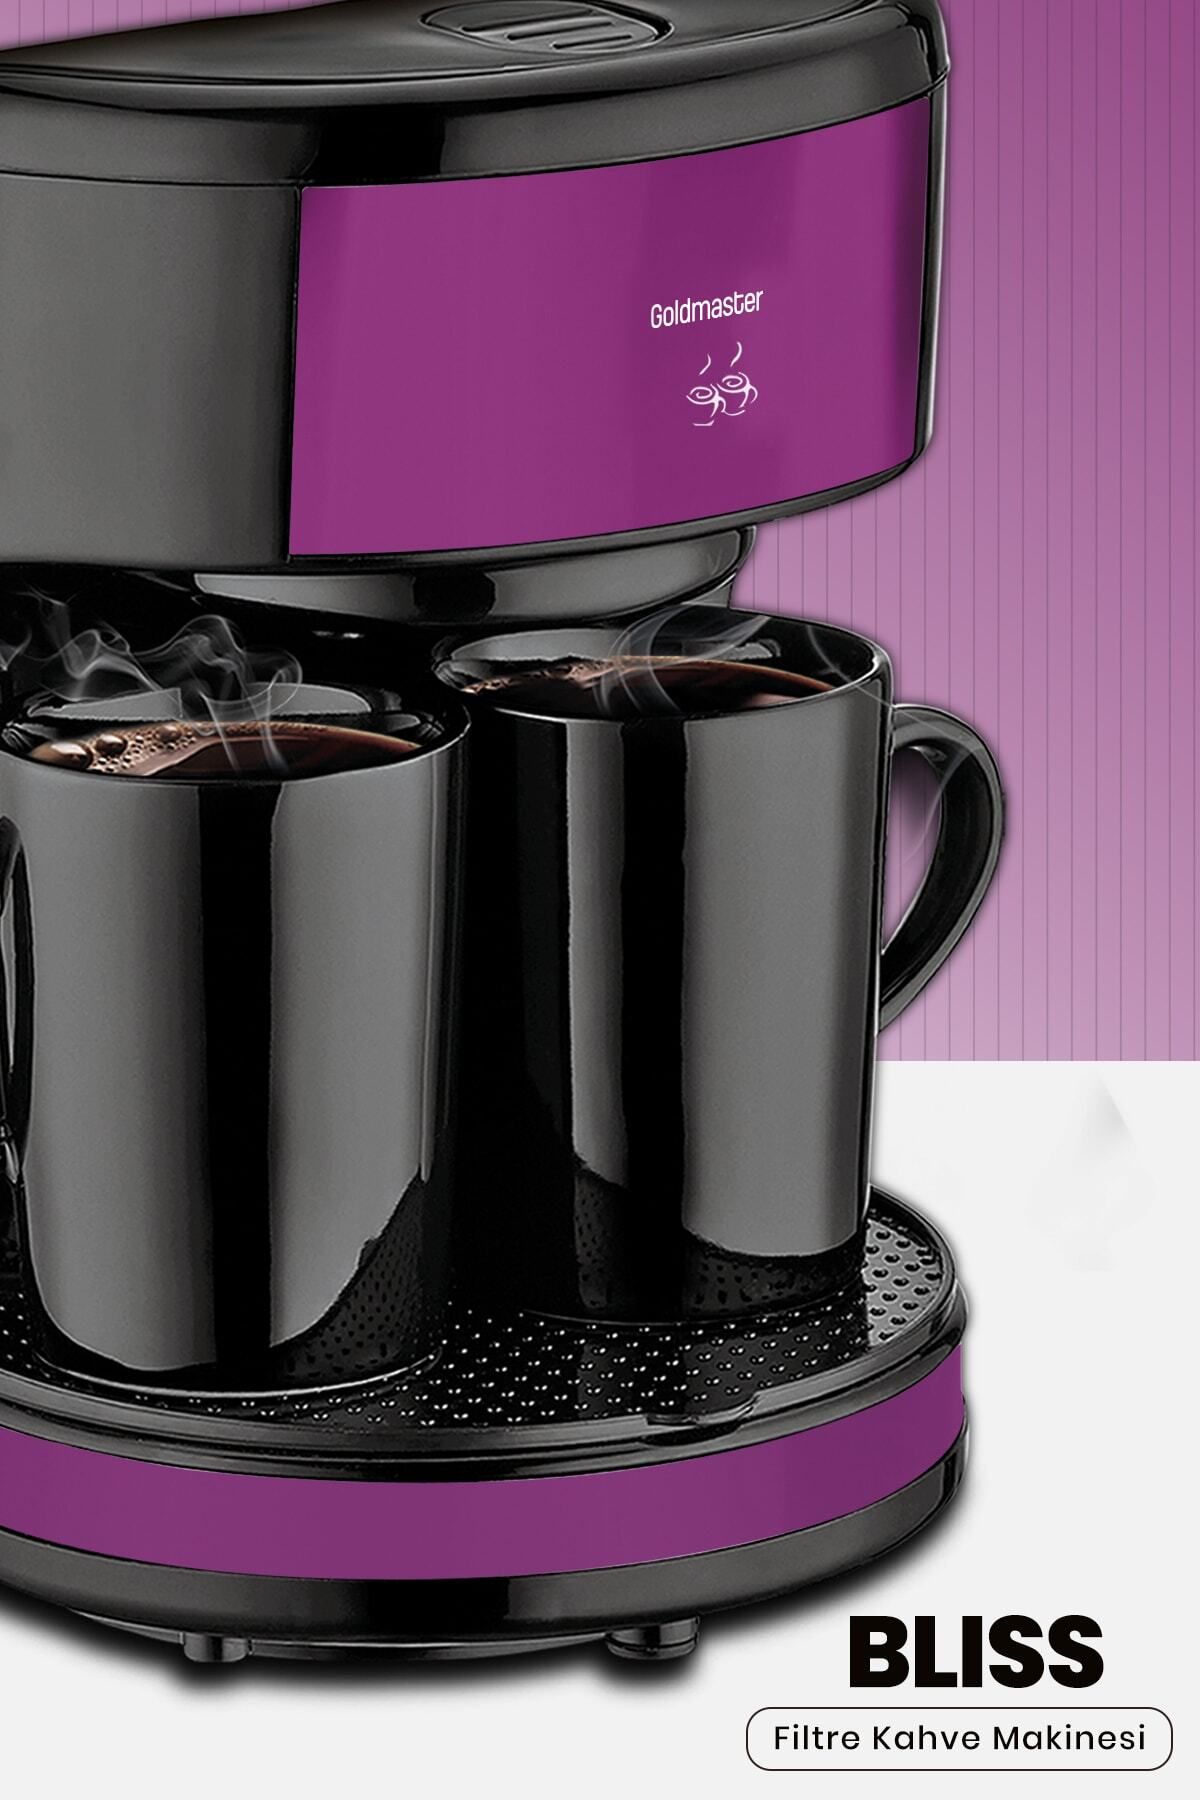 GoldMaster Bliss Yıkanabilir Ve Temizlenebilir Filtre Kahve Makinesi